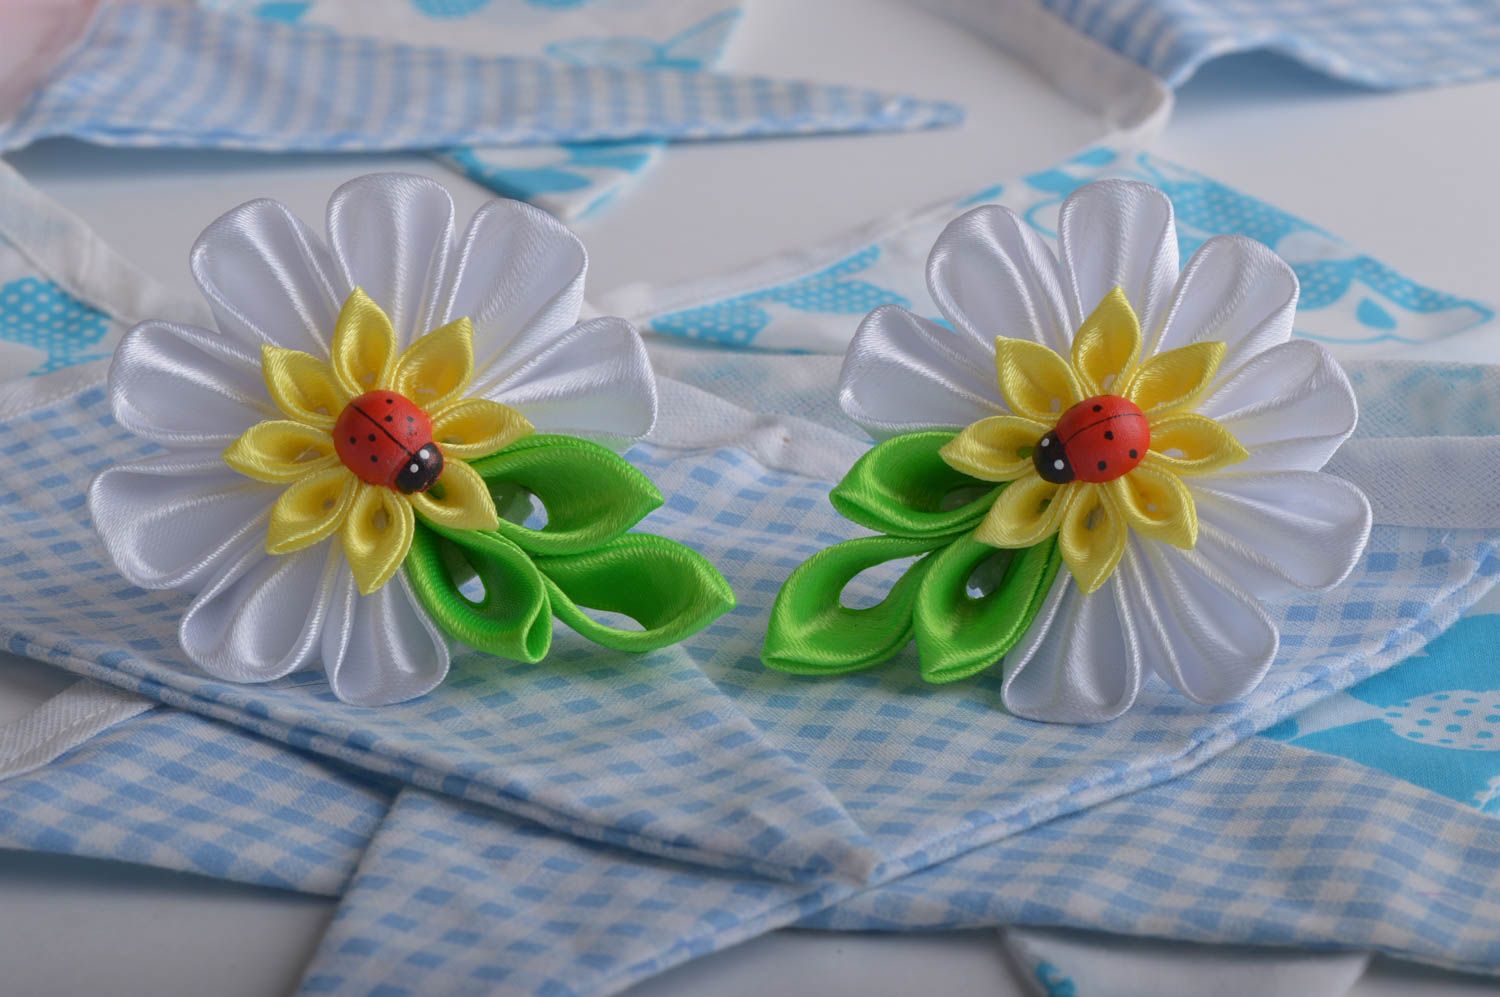 Handmade cute hair ties 2 unusual flower hair ties accessories for kids photo 1